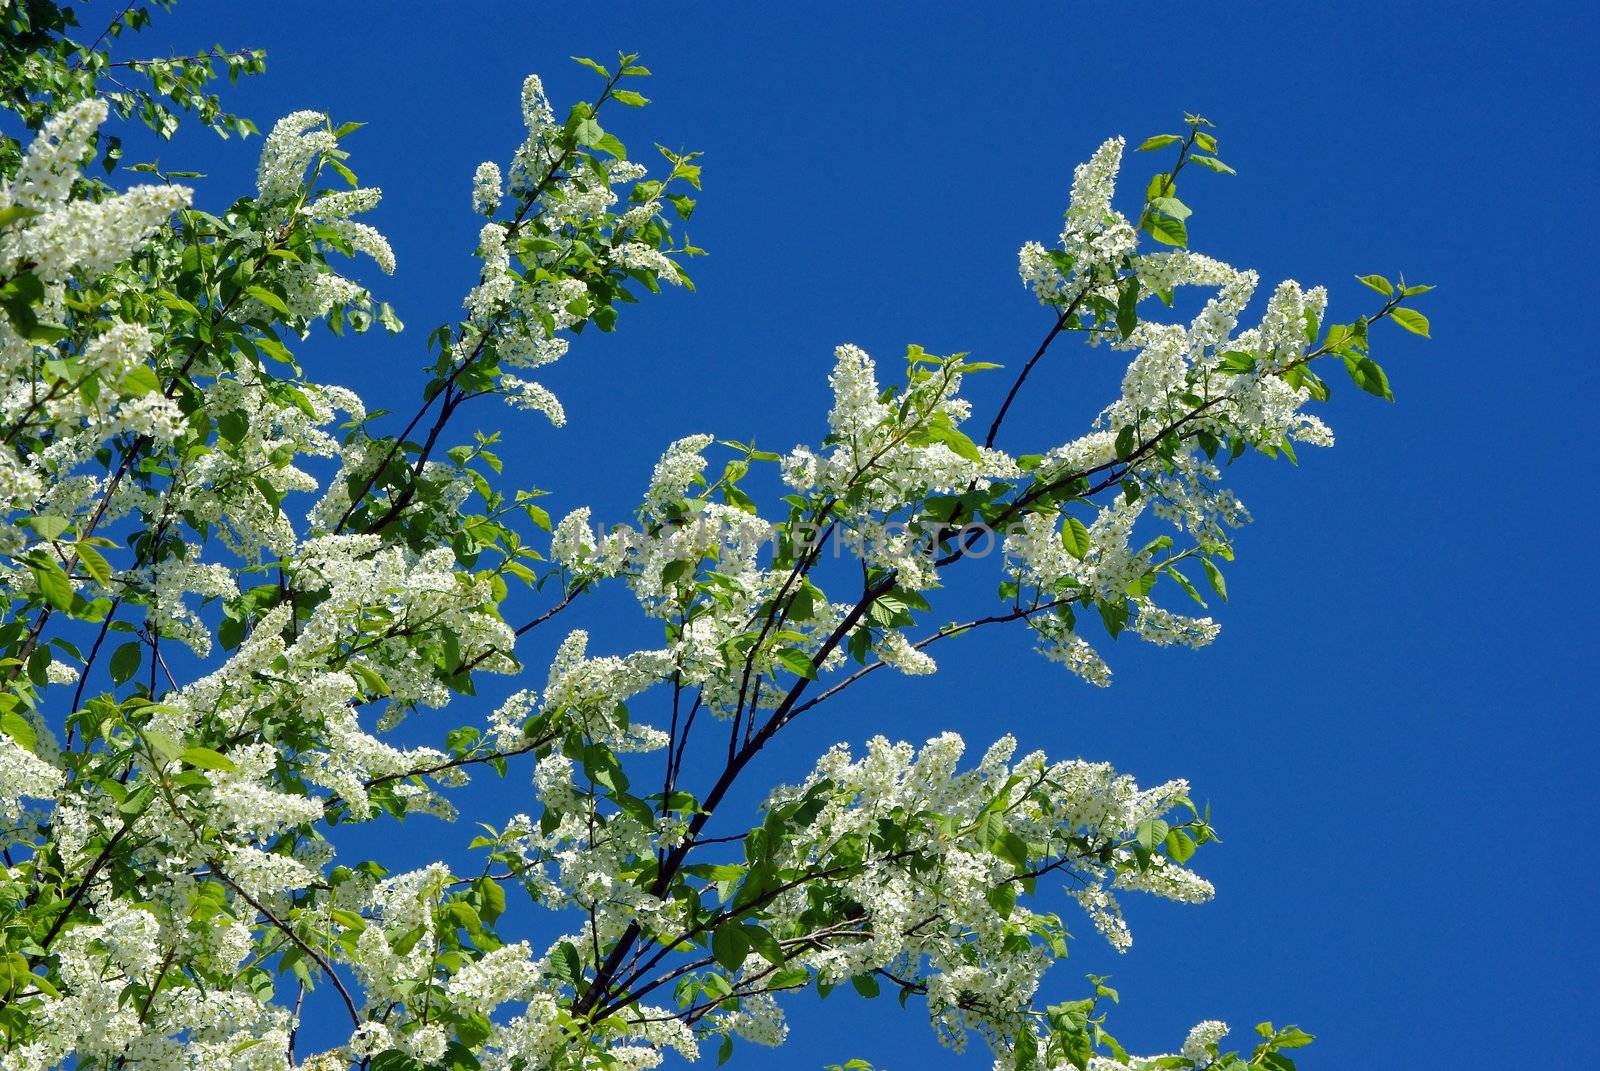 Bird-cherry blossom against blue sky by Vitamin